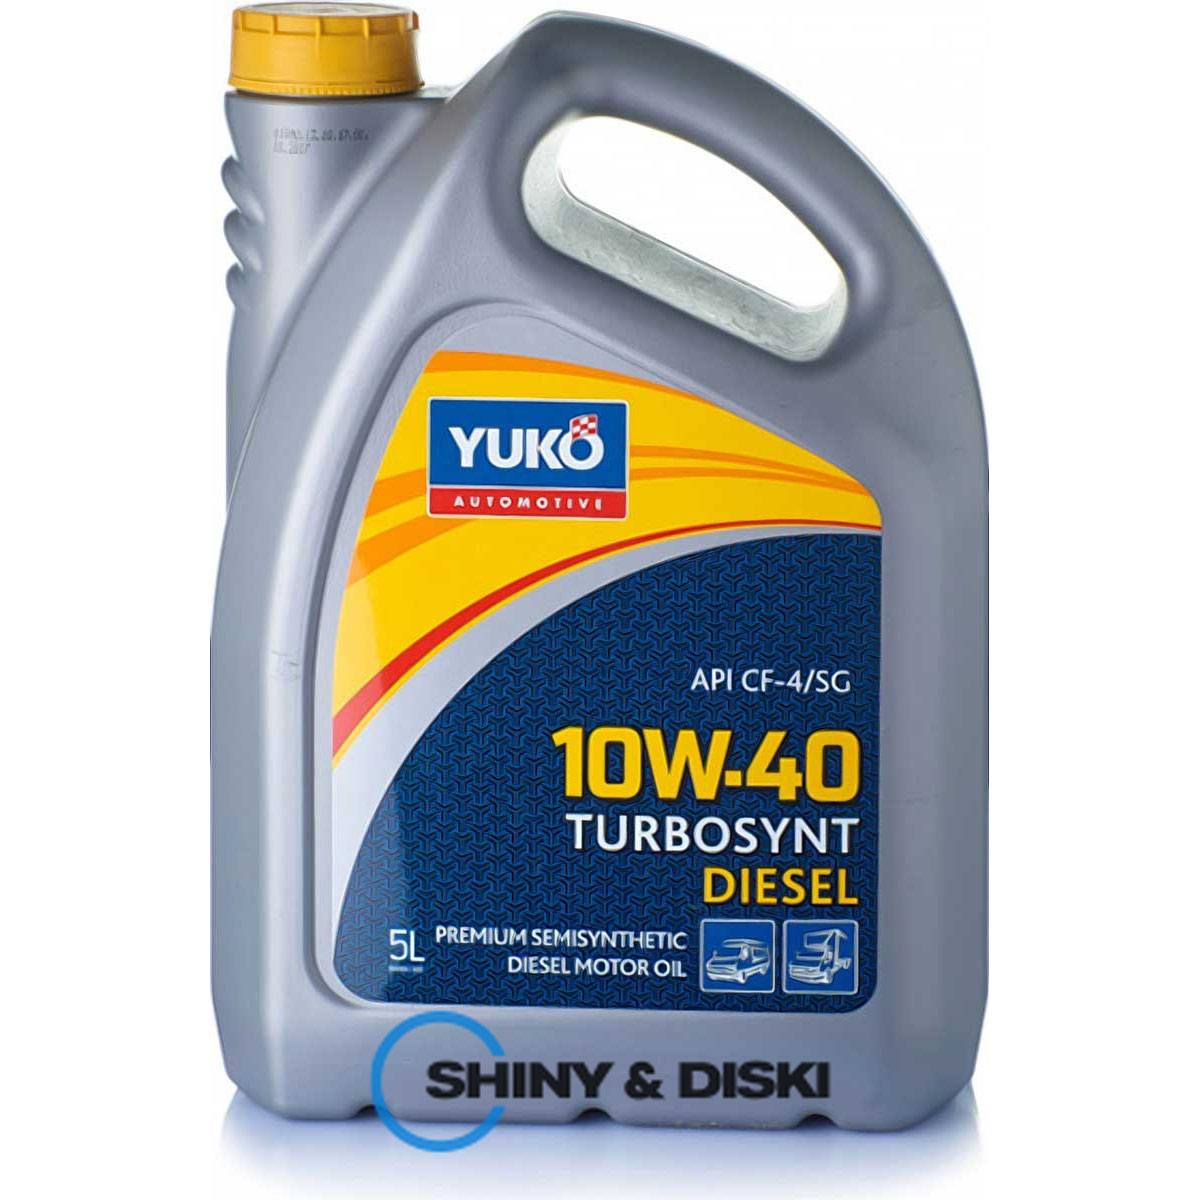 yuko turbosynt diesel